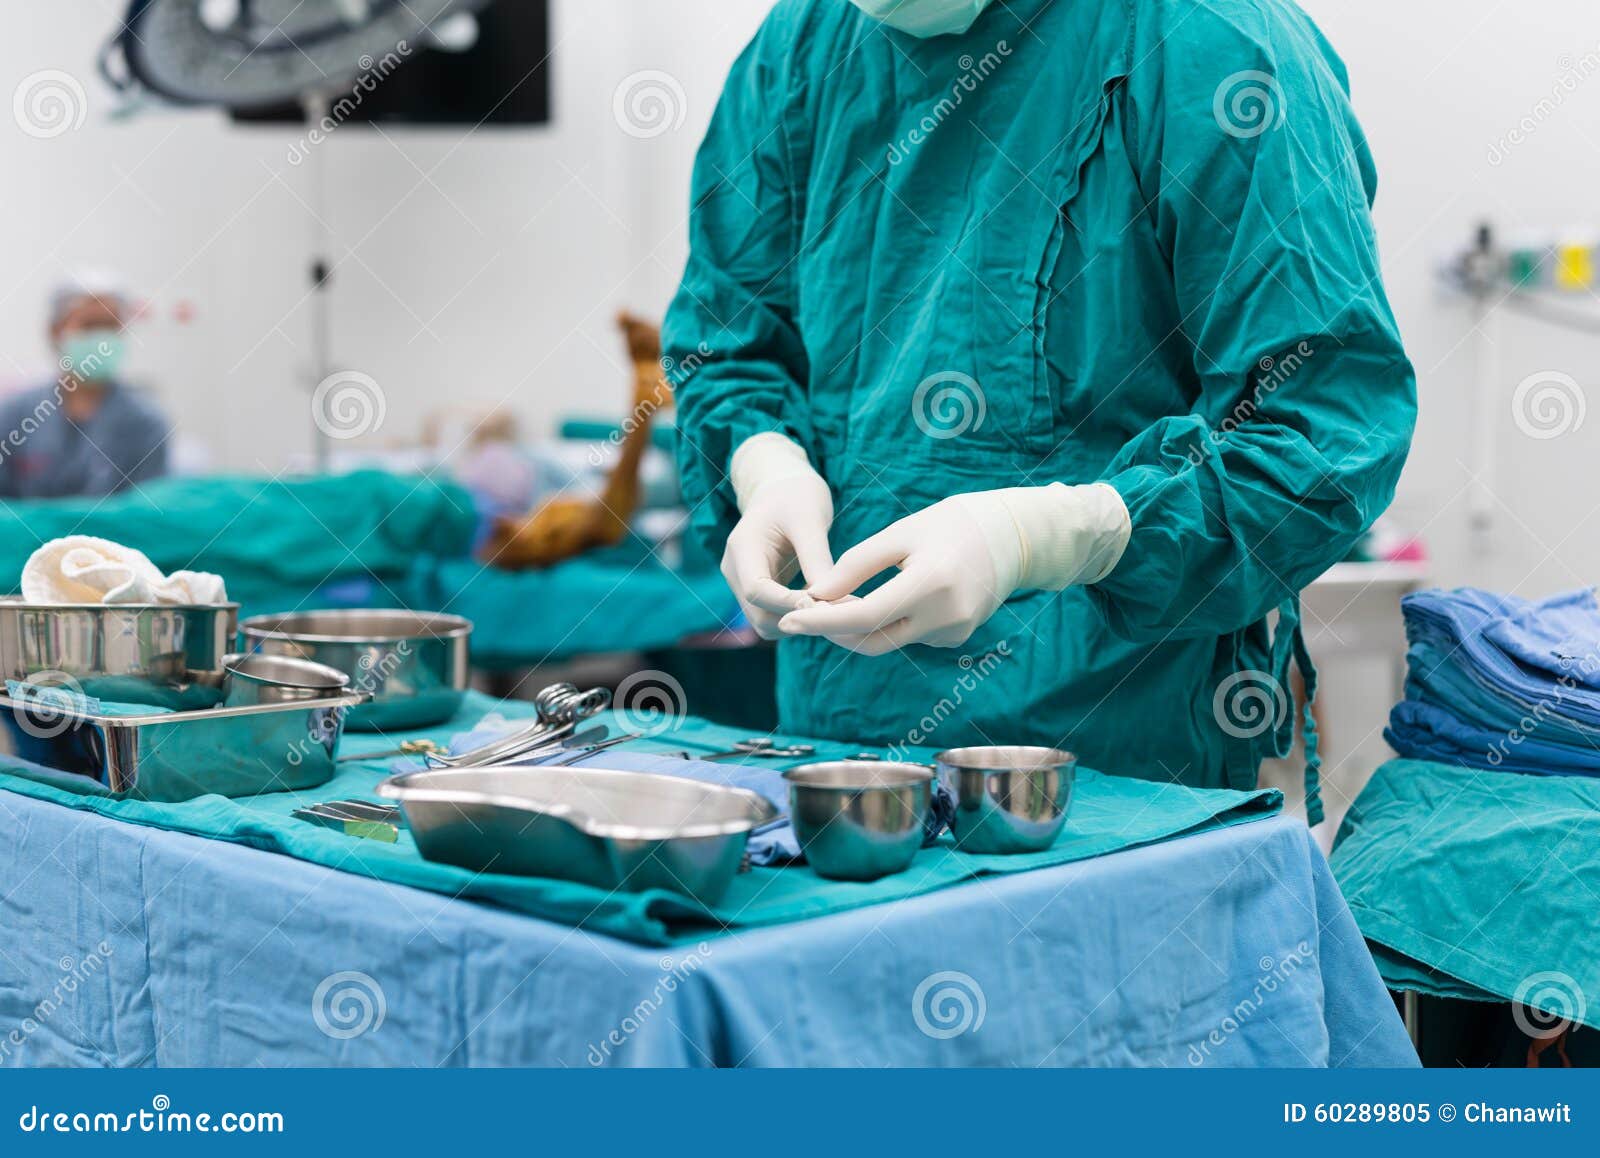 Подготовка медсестры к операции. Стерильный операционный стол. Хирургия стерильный стол. Операционный стол в операционной. Подготовка операционного стола к операции.